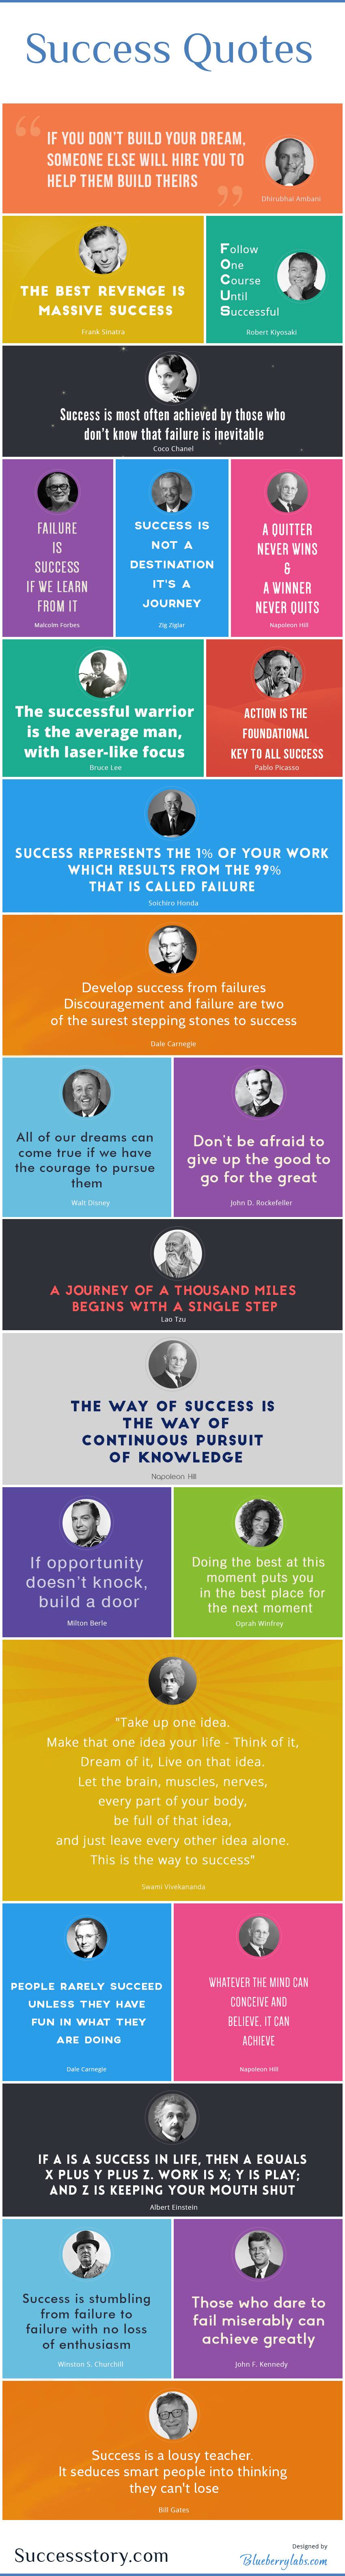 success quotes infographic